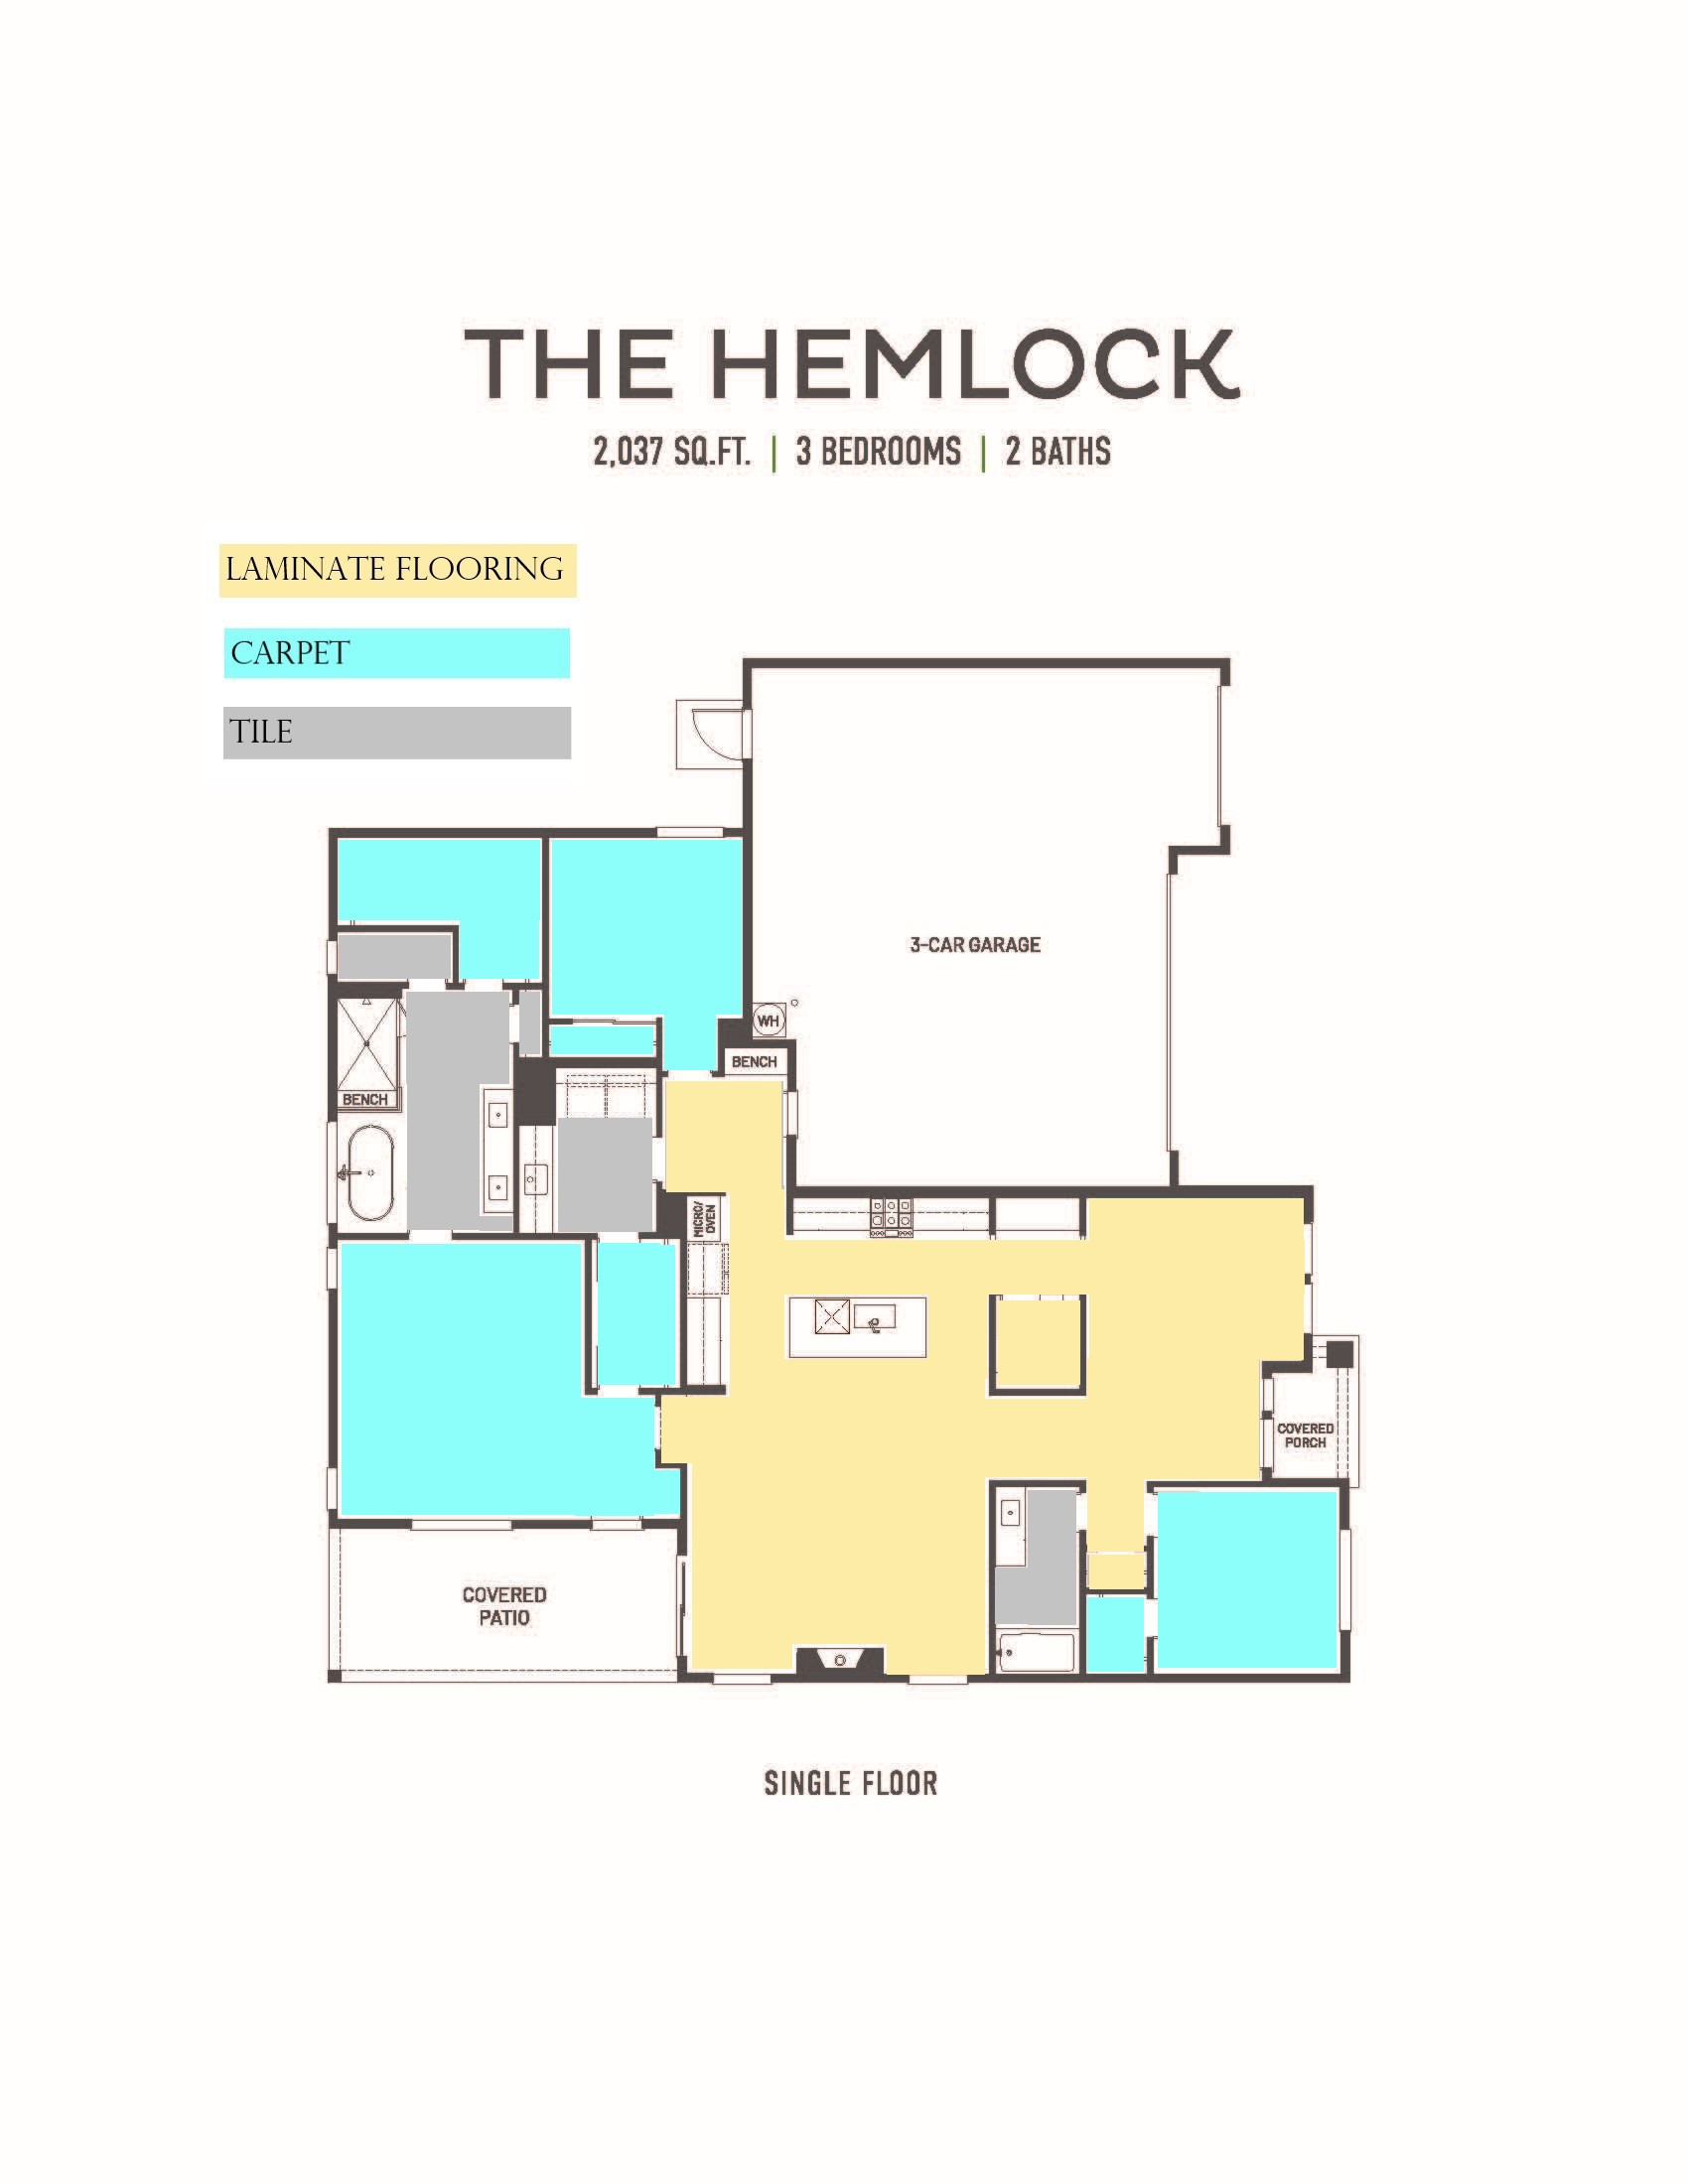 Hemlock Flooring Breaks